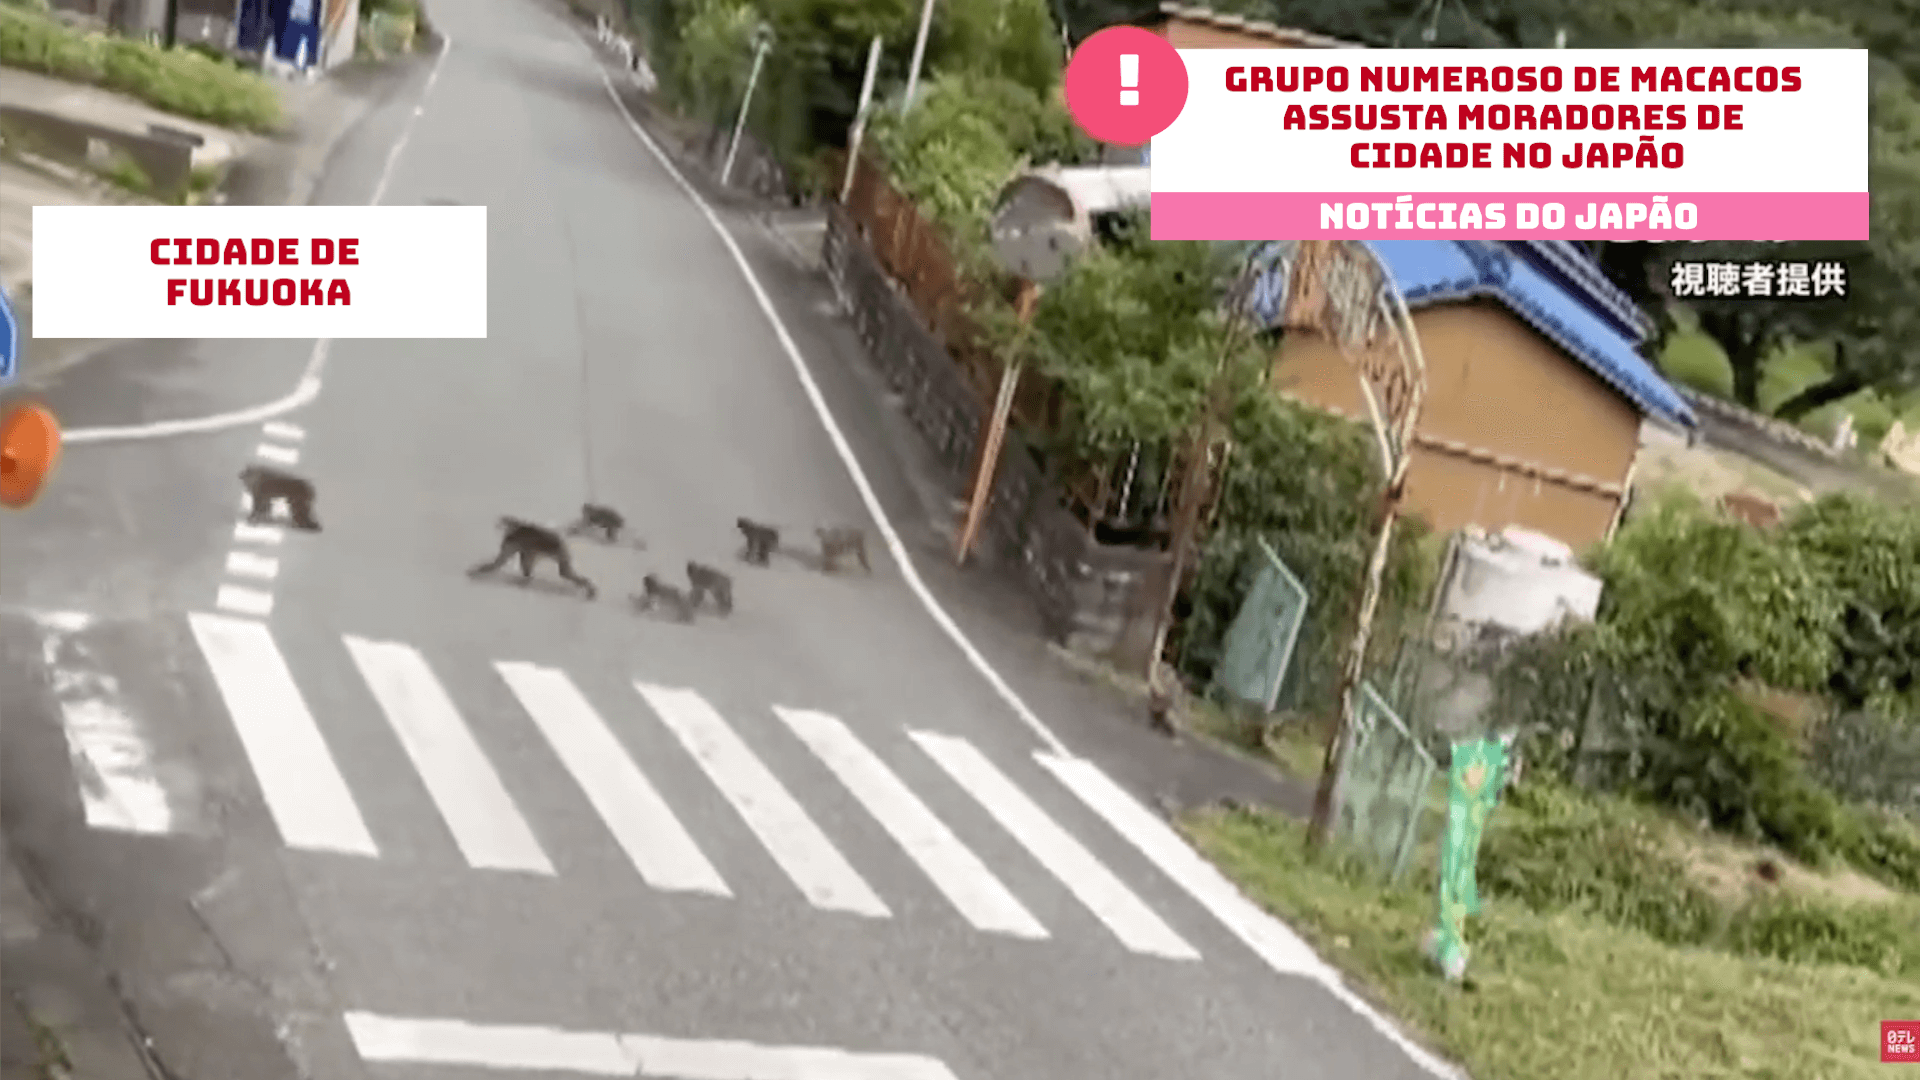 Grupo numeroso de macacos assusta moradores de cidade no Japão 